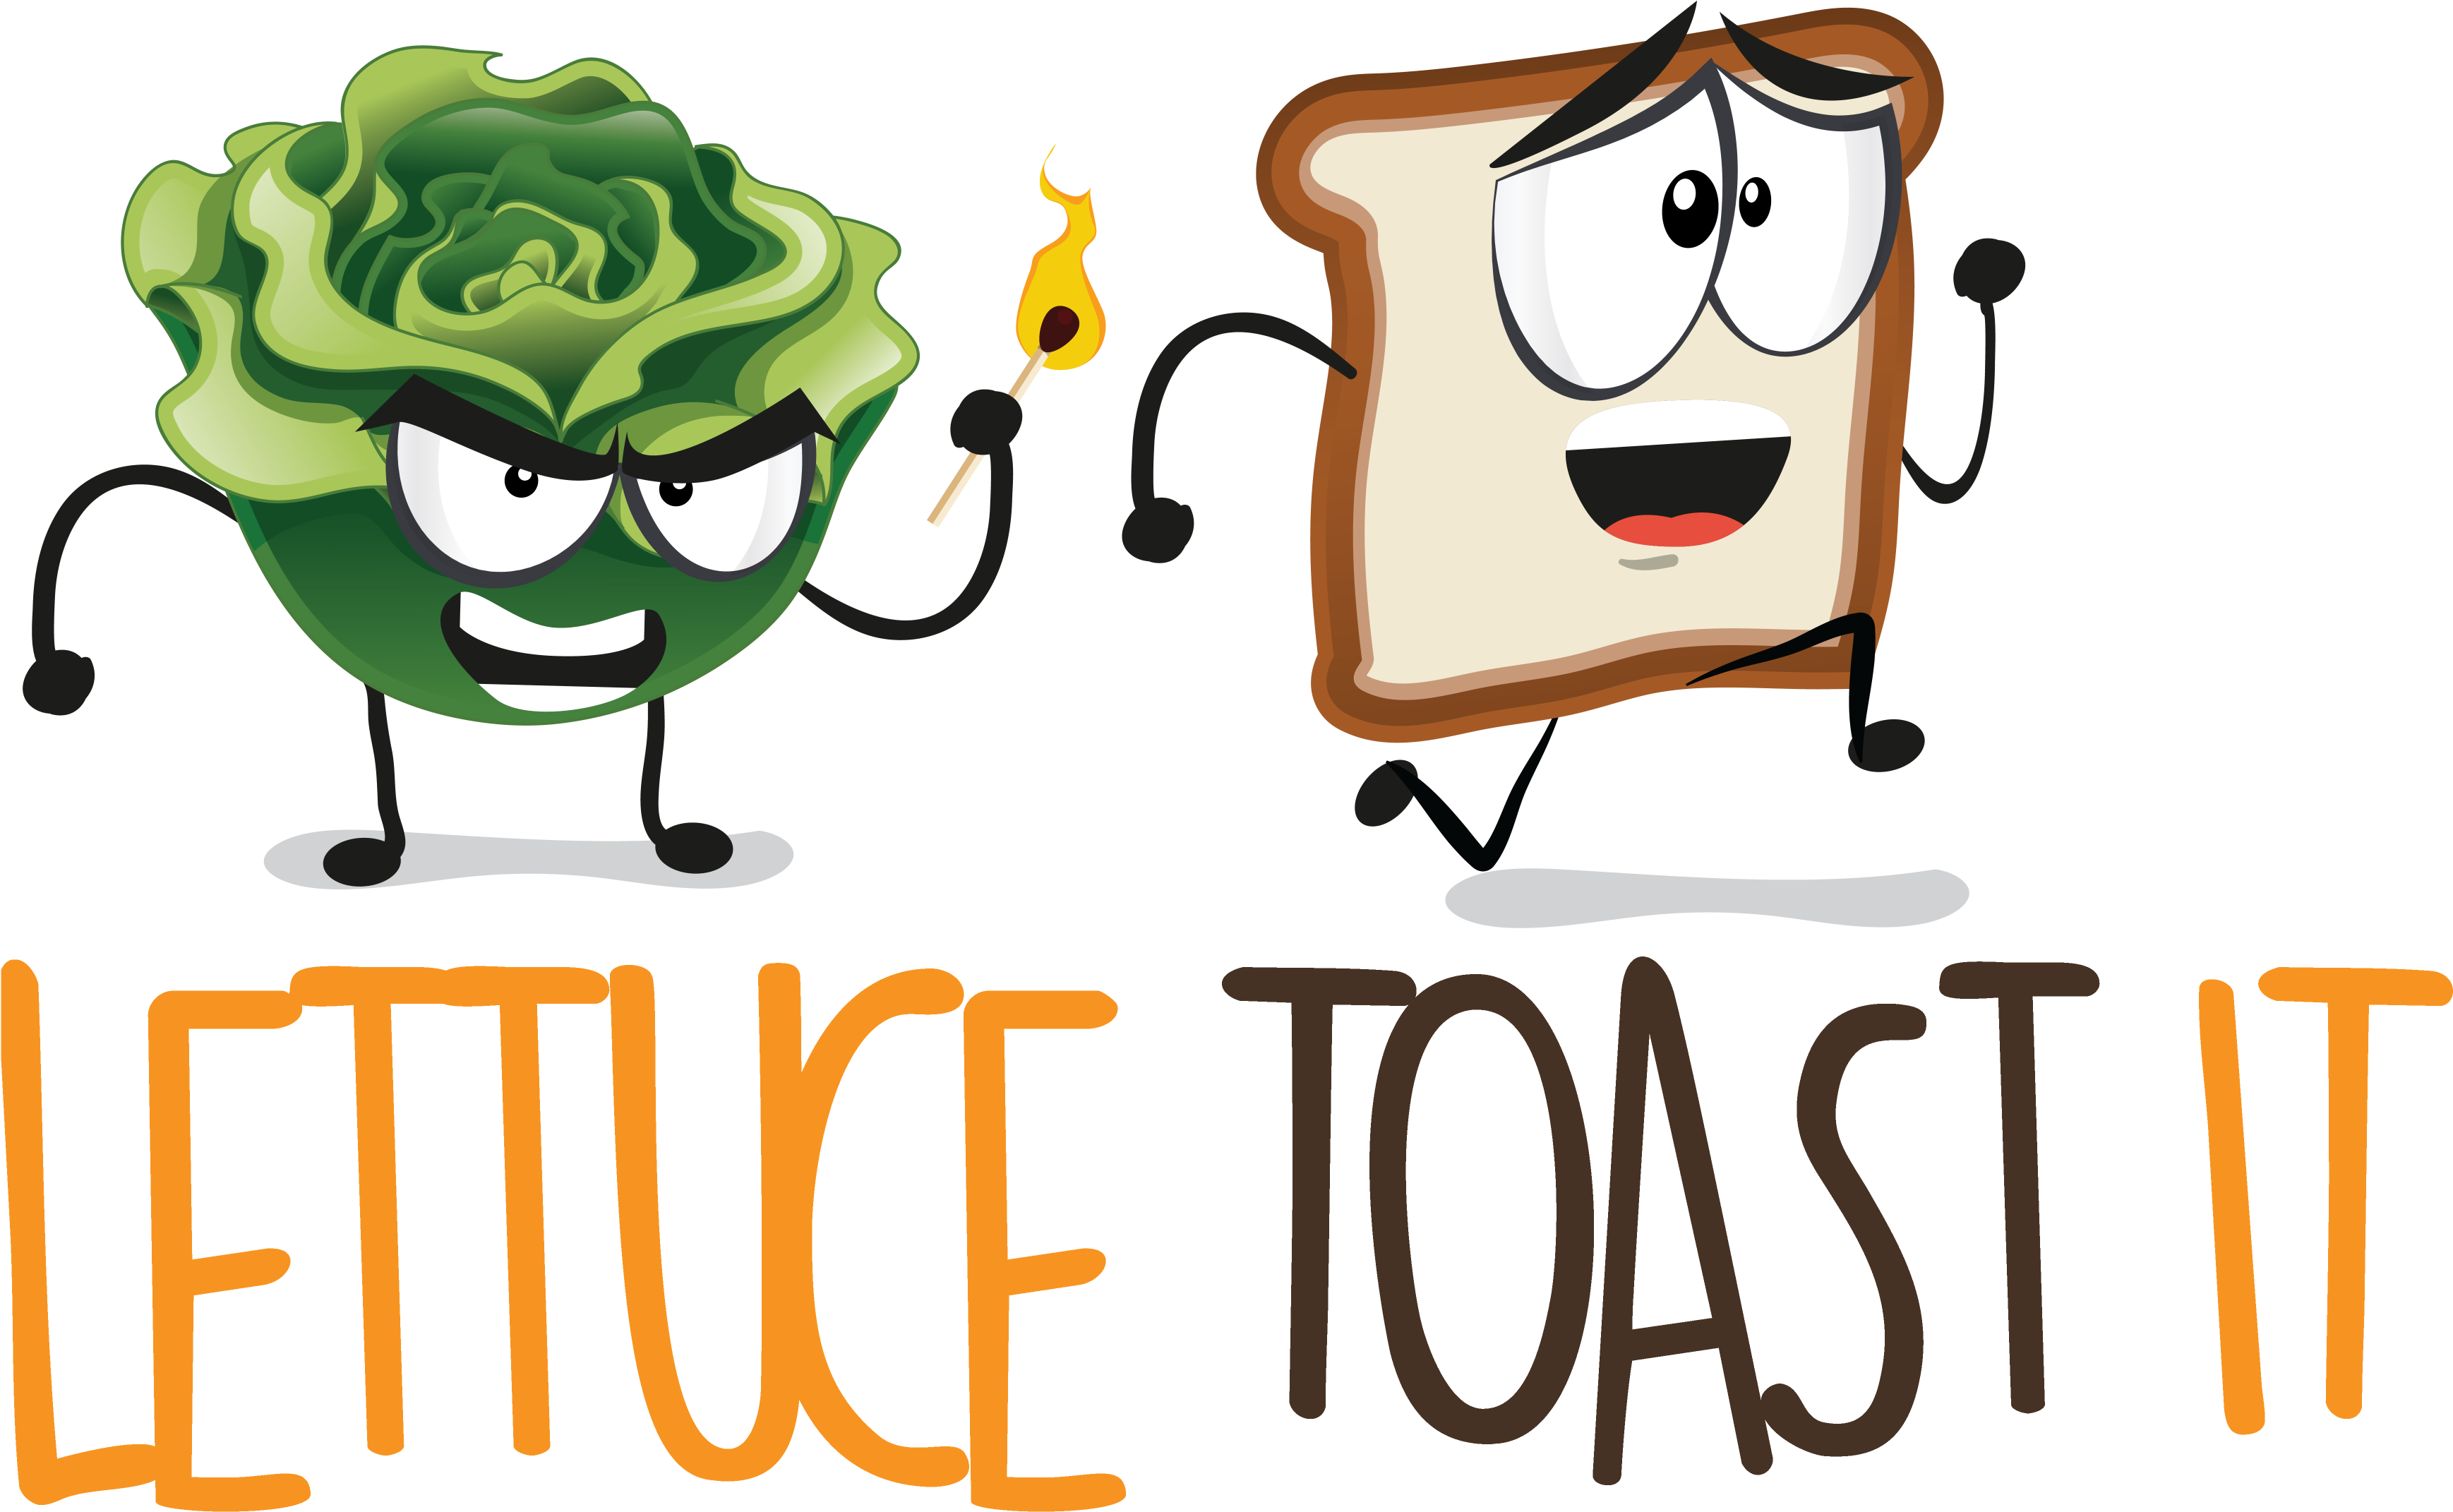 Lettuce Toast It (5100x2906)